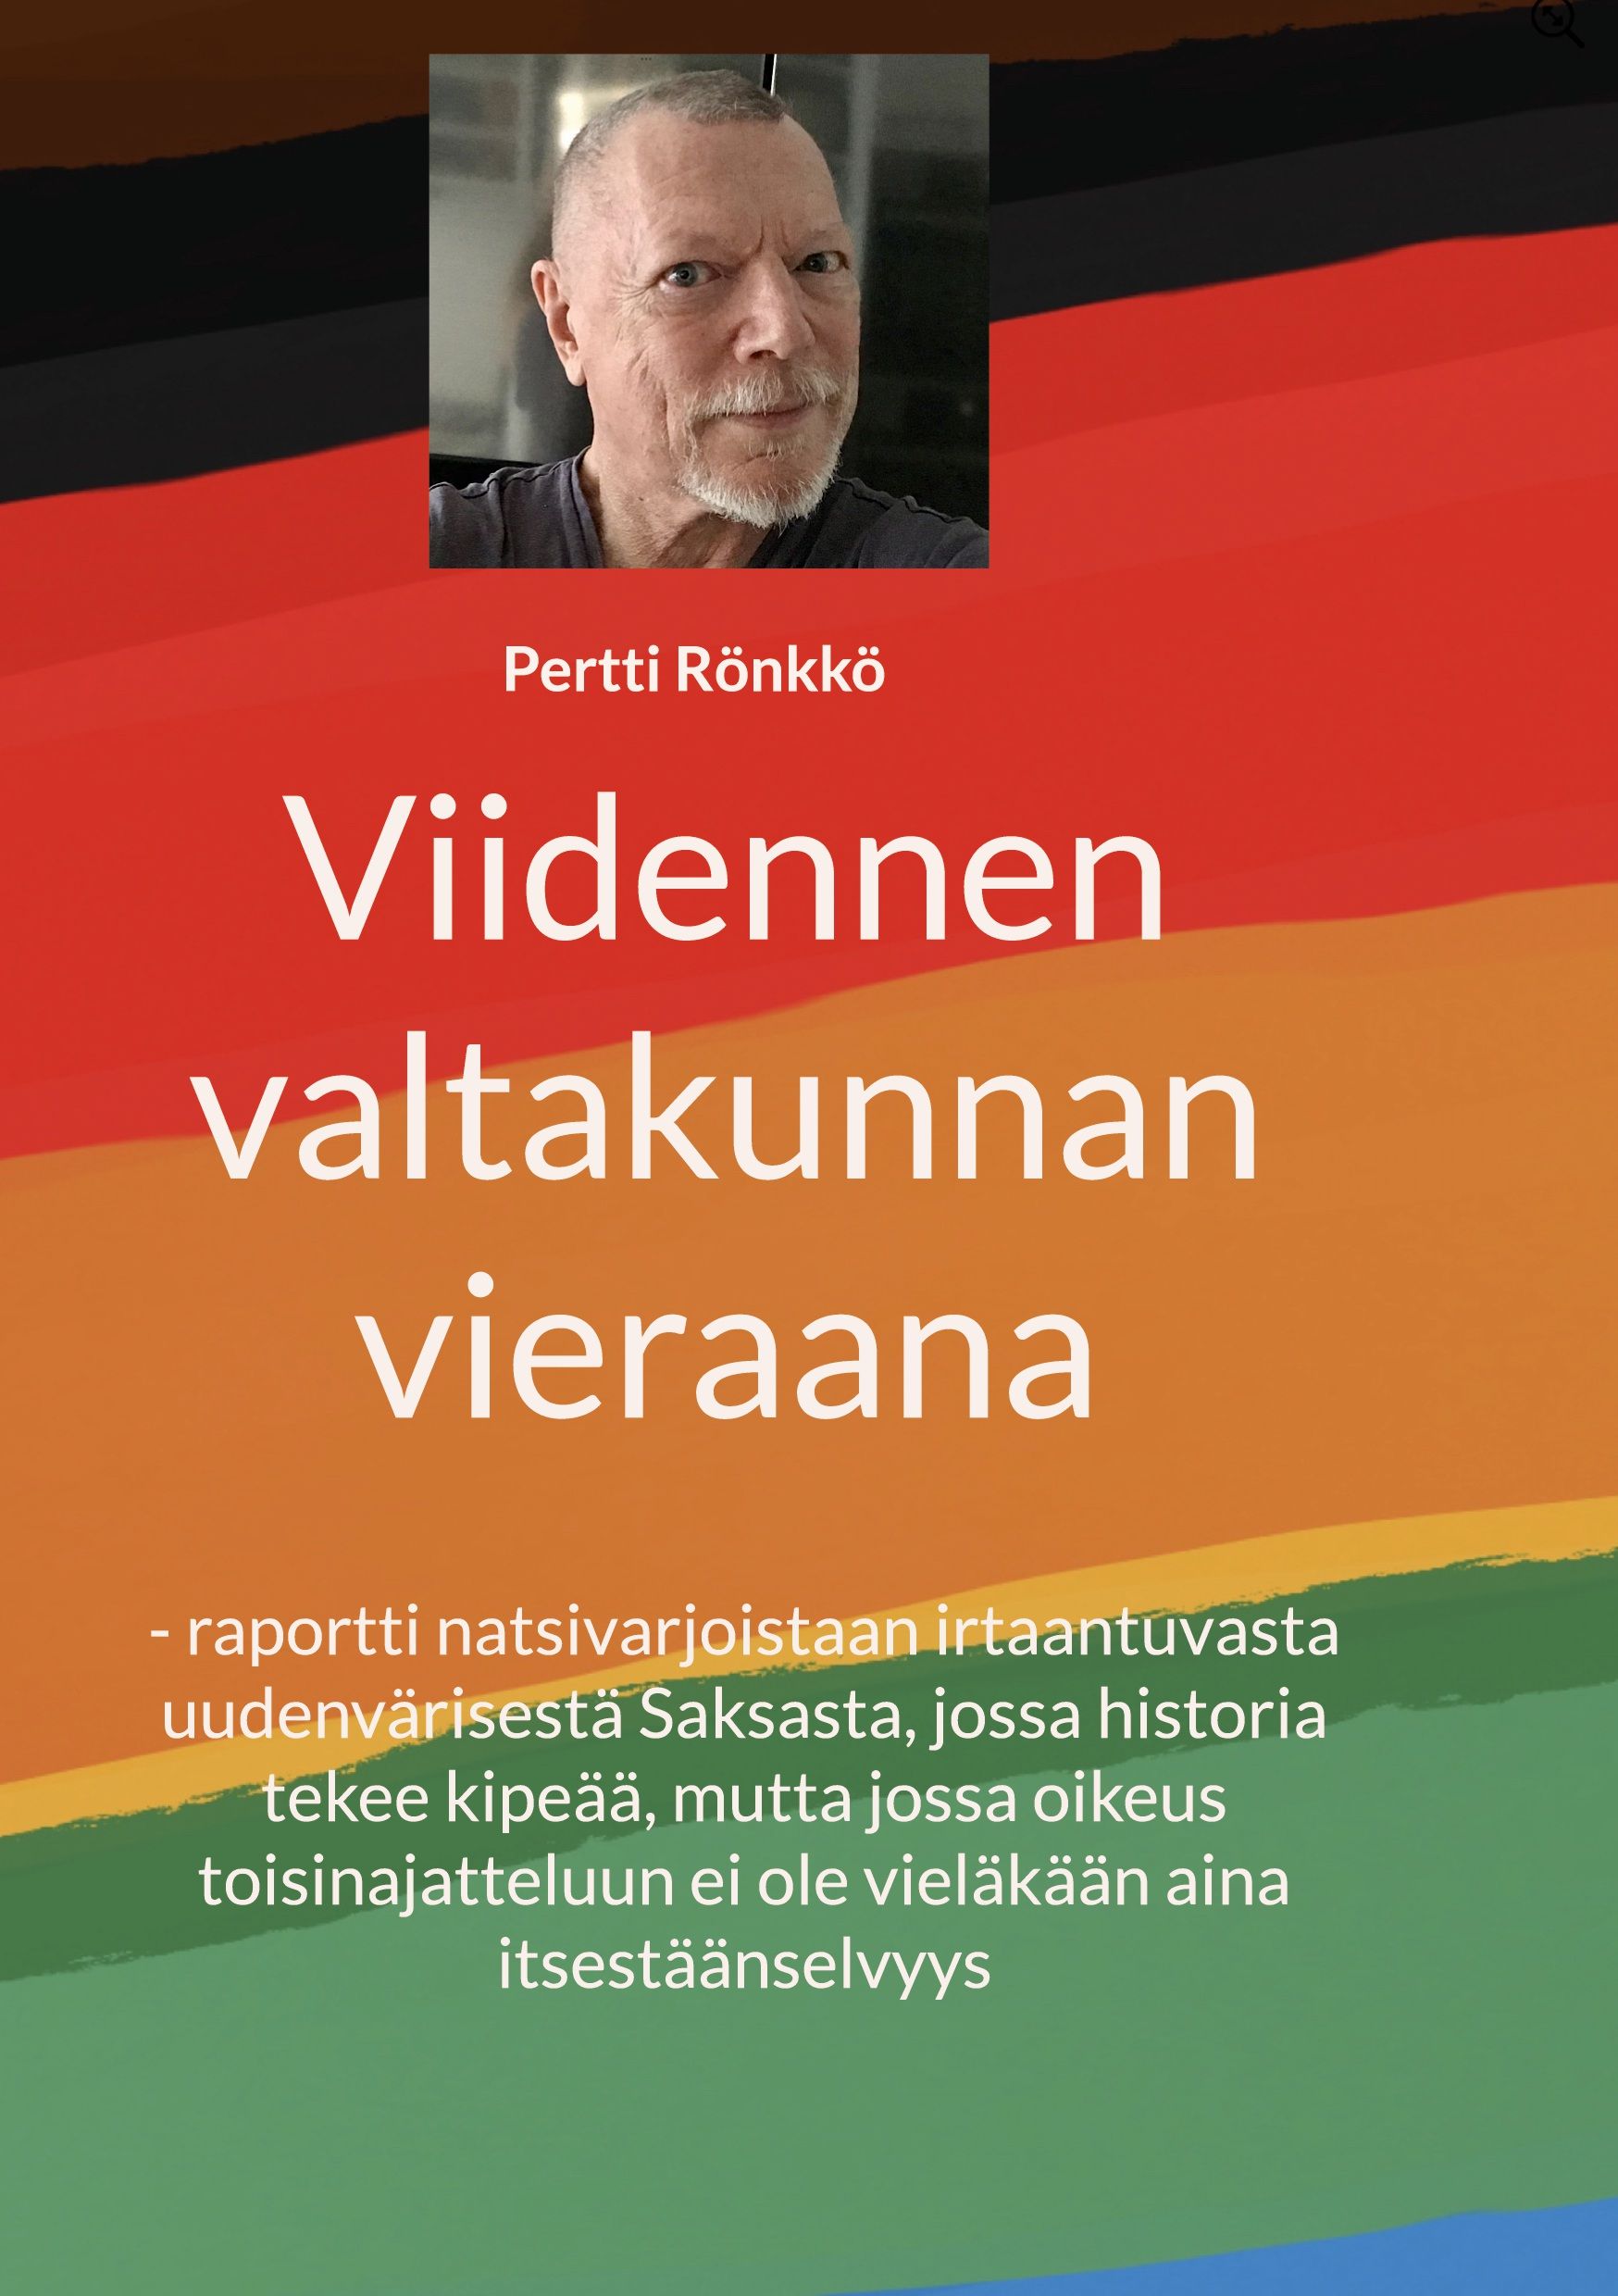 Pertti Rönkkö : Viidennen valtakunnan vieraana